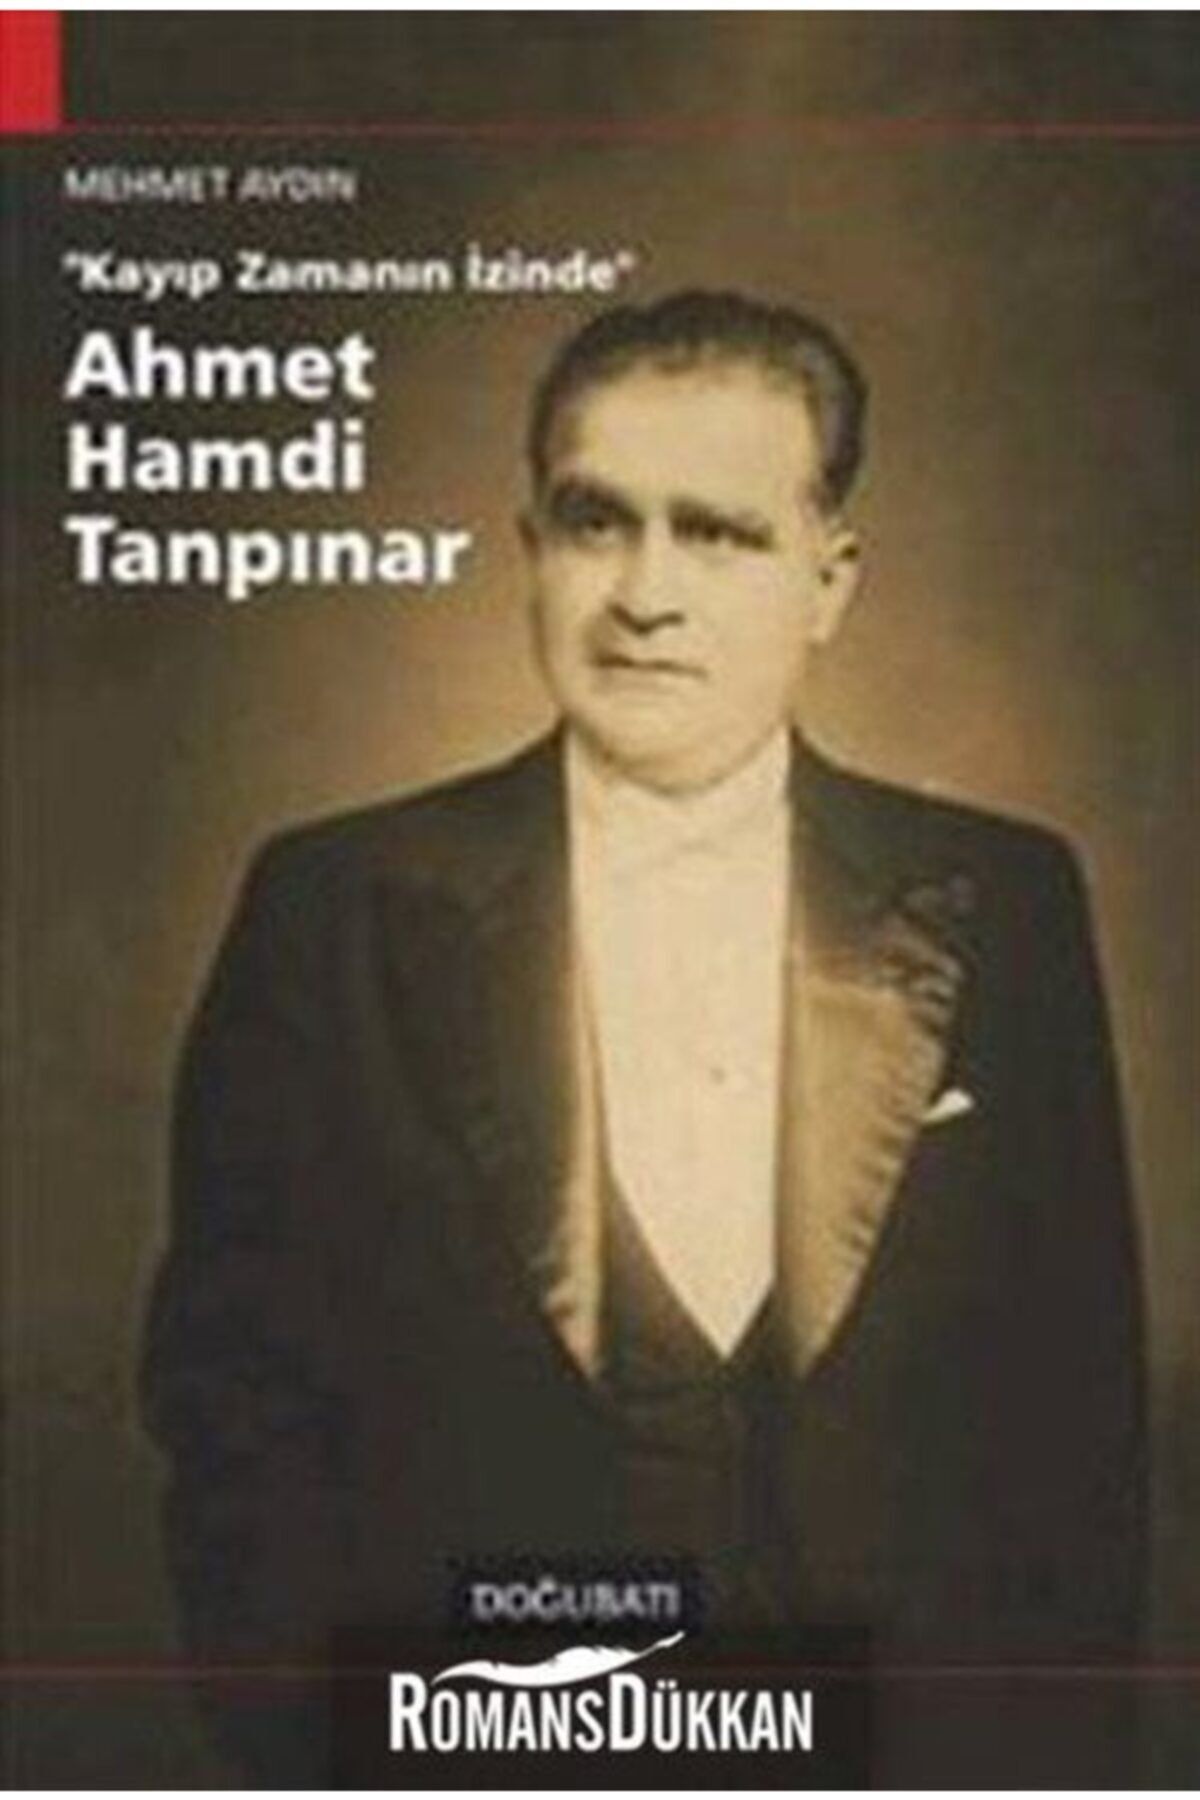 Doğu Batı Yayınları Kayıp Zamanın Içinde Ahmet Hamdi Tanpınar